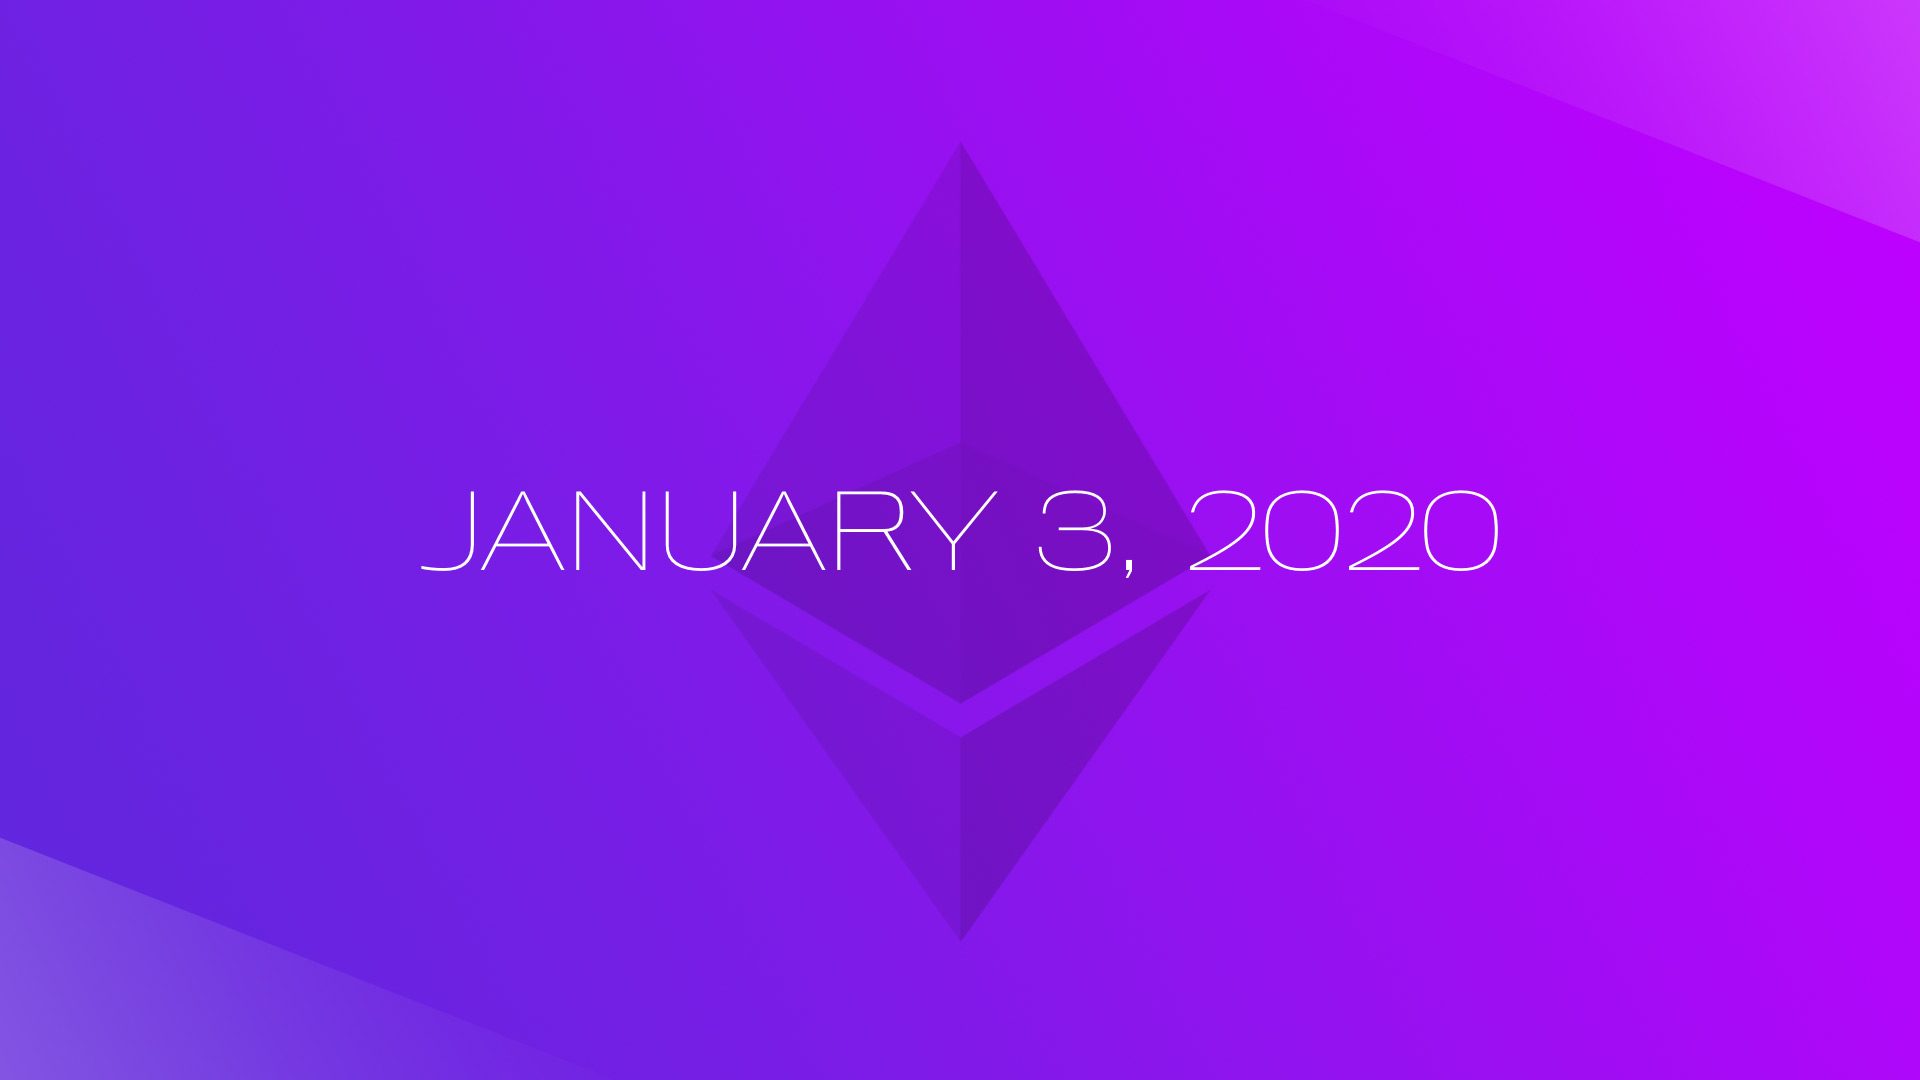 Phase 0 của Ethereum 2.0 sẽ chính thức được triển khai vào ngày 03/01/2020